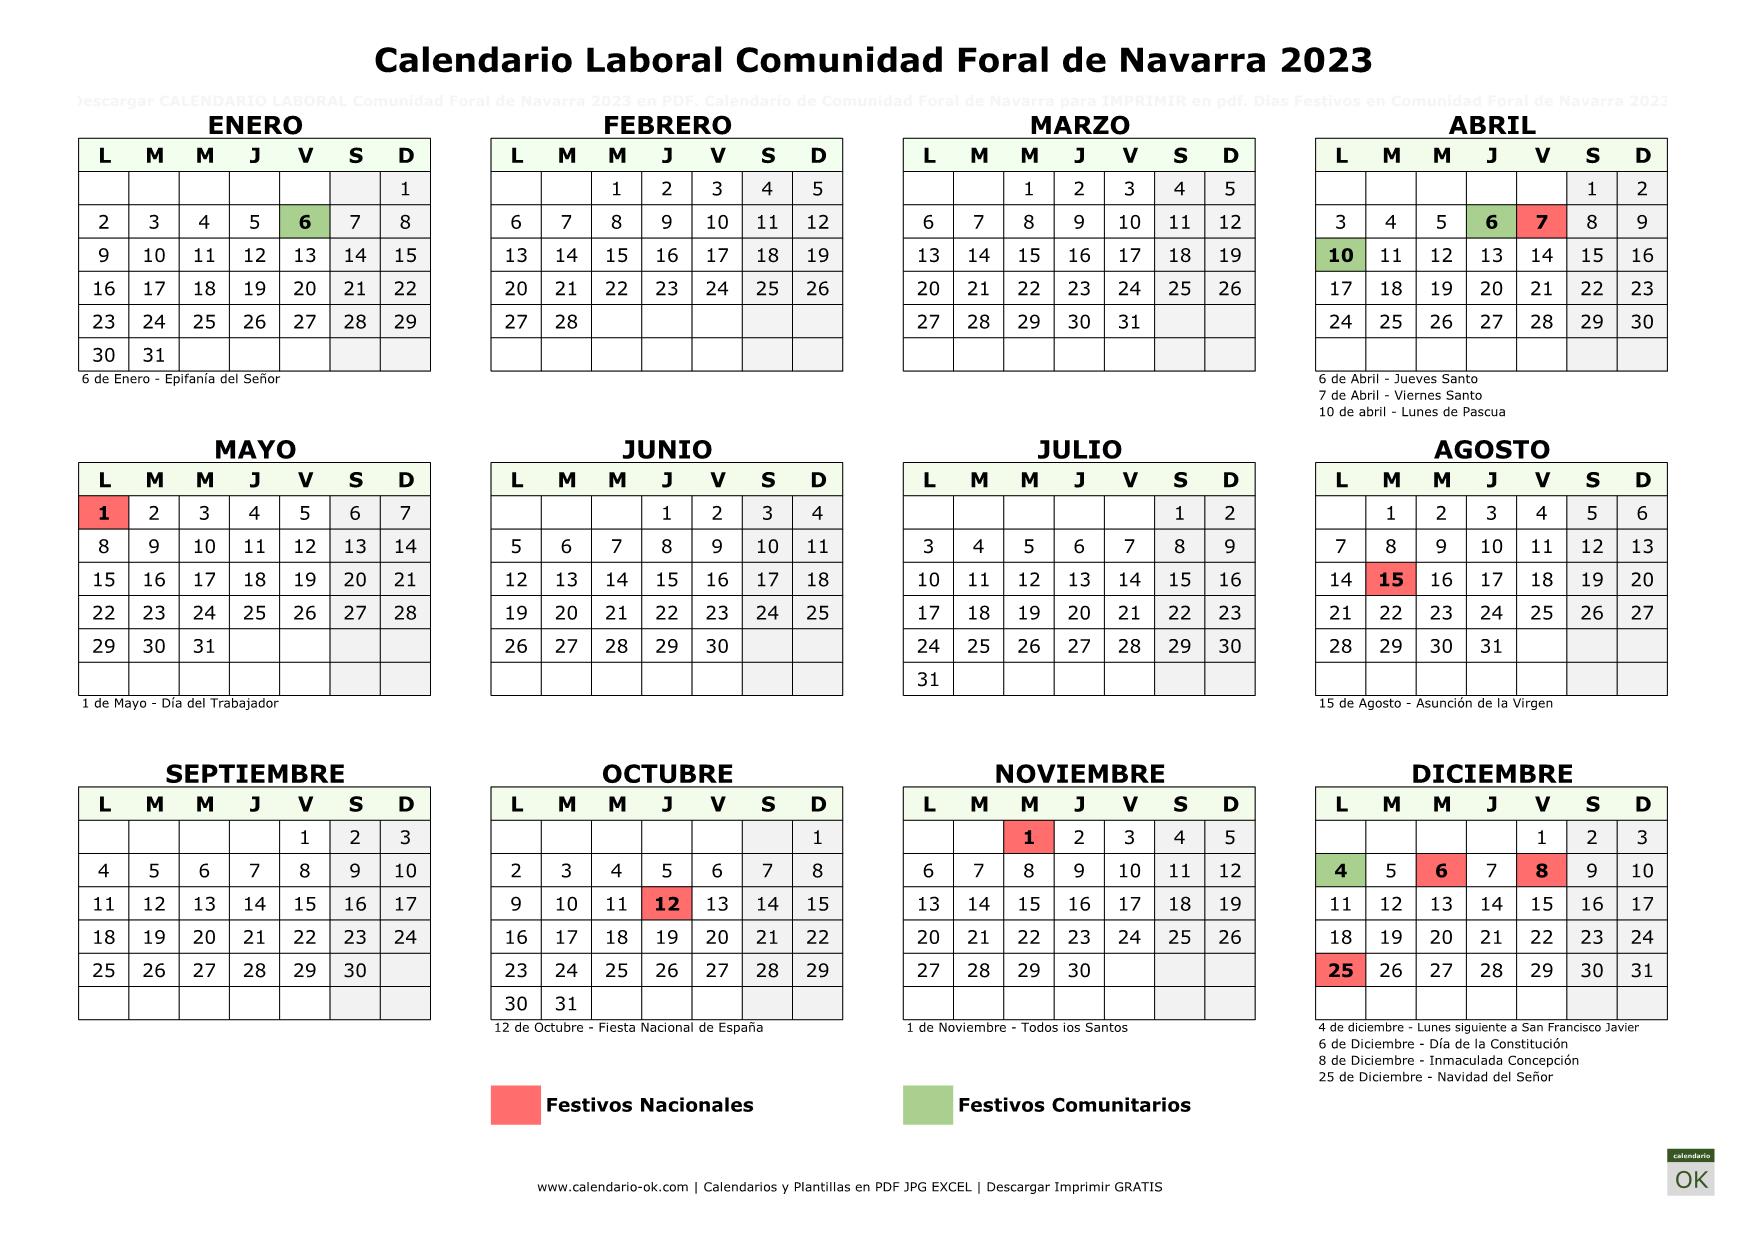 Calendario Laboral COMUNIDAD FORAL DE NAVARRA 2023 horizontal